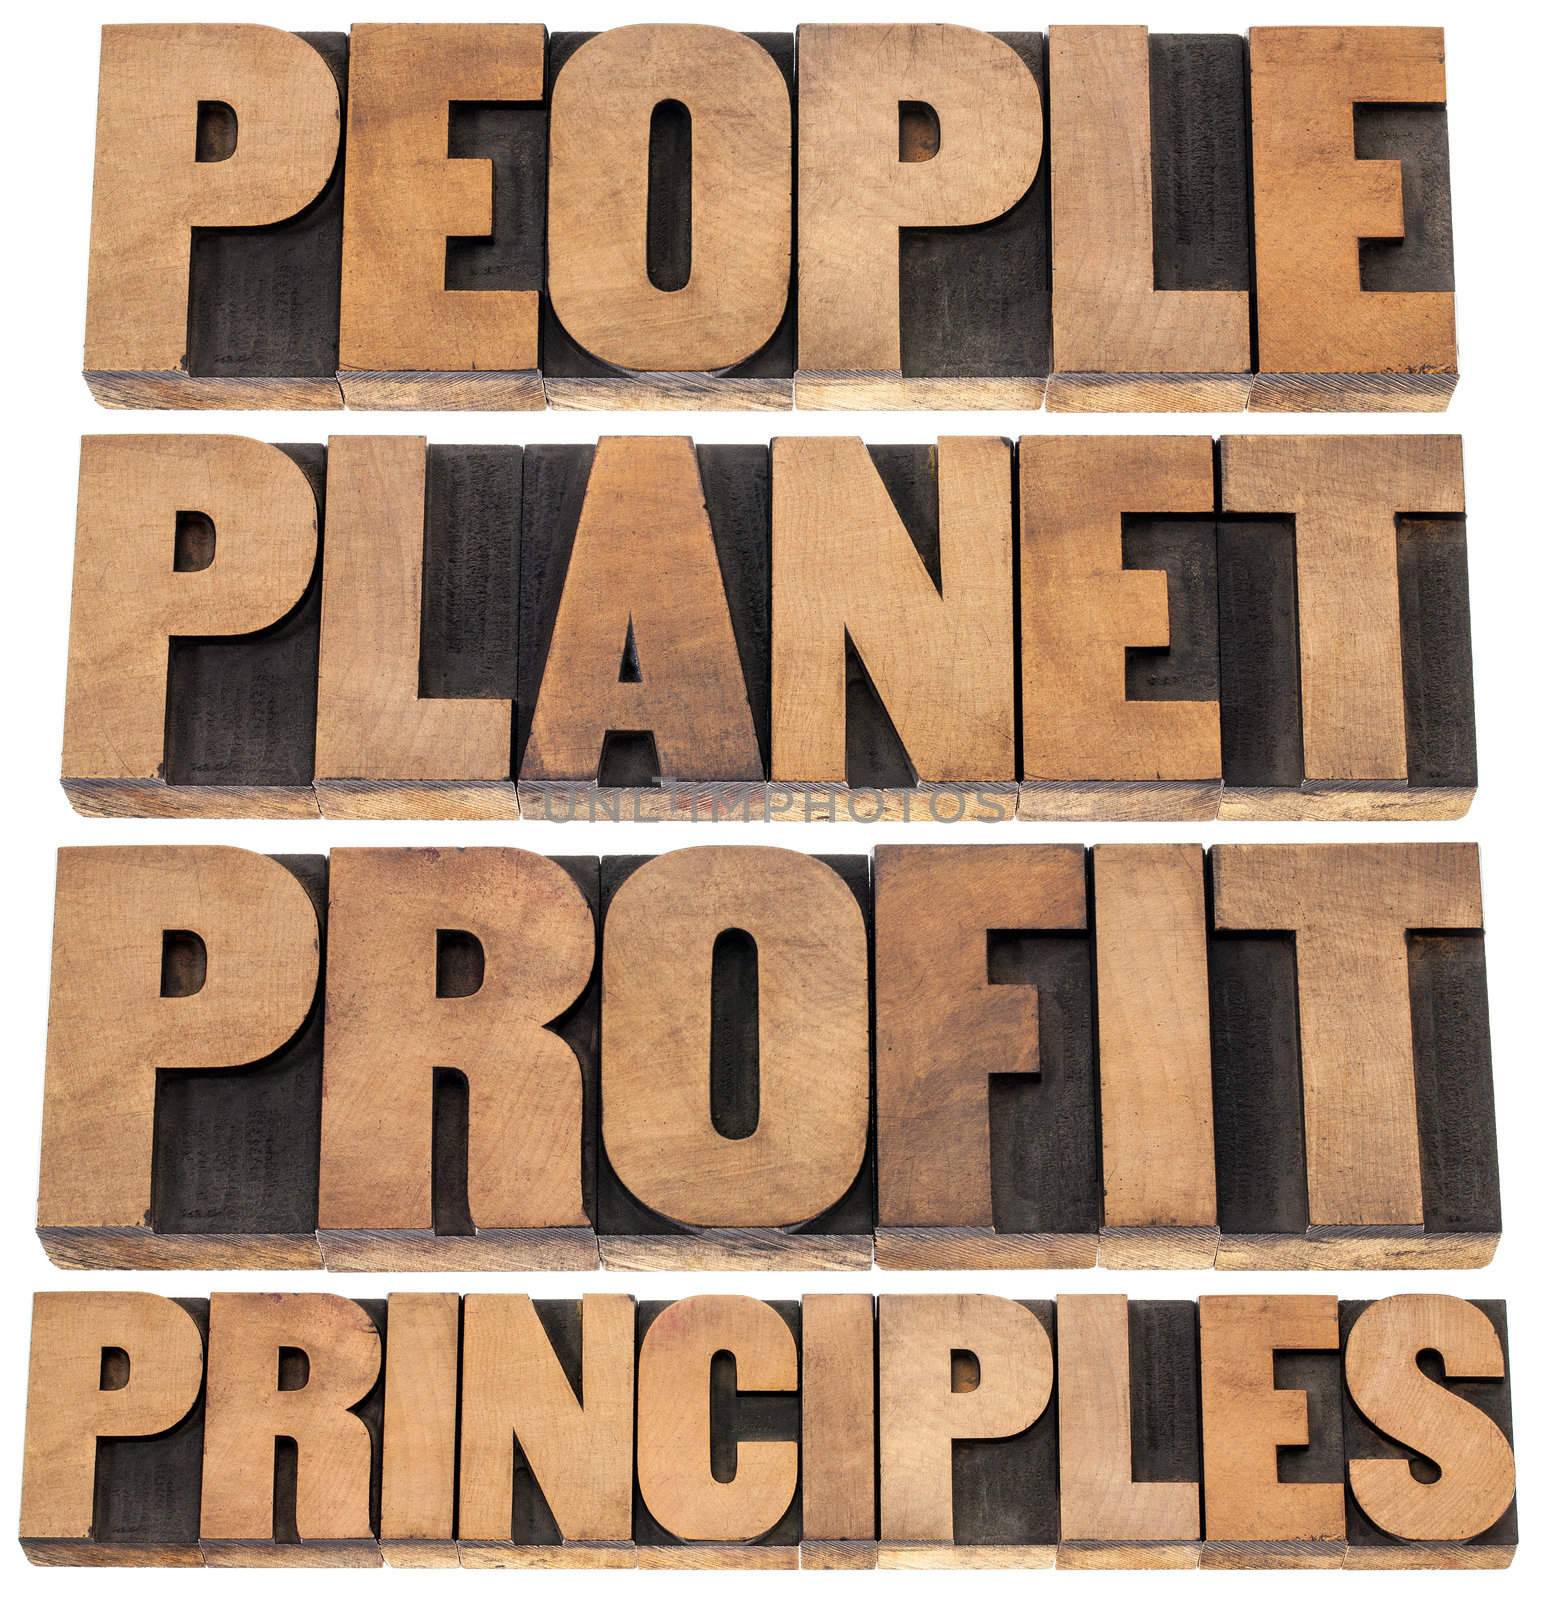 people, planet, profit, principles  by PixelsAway